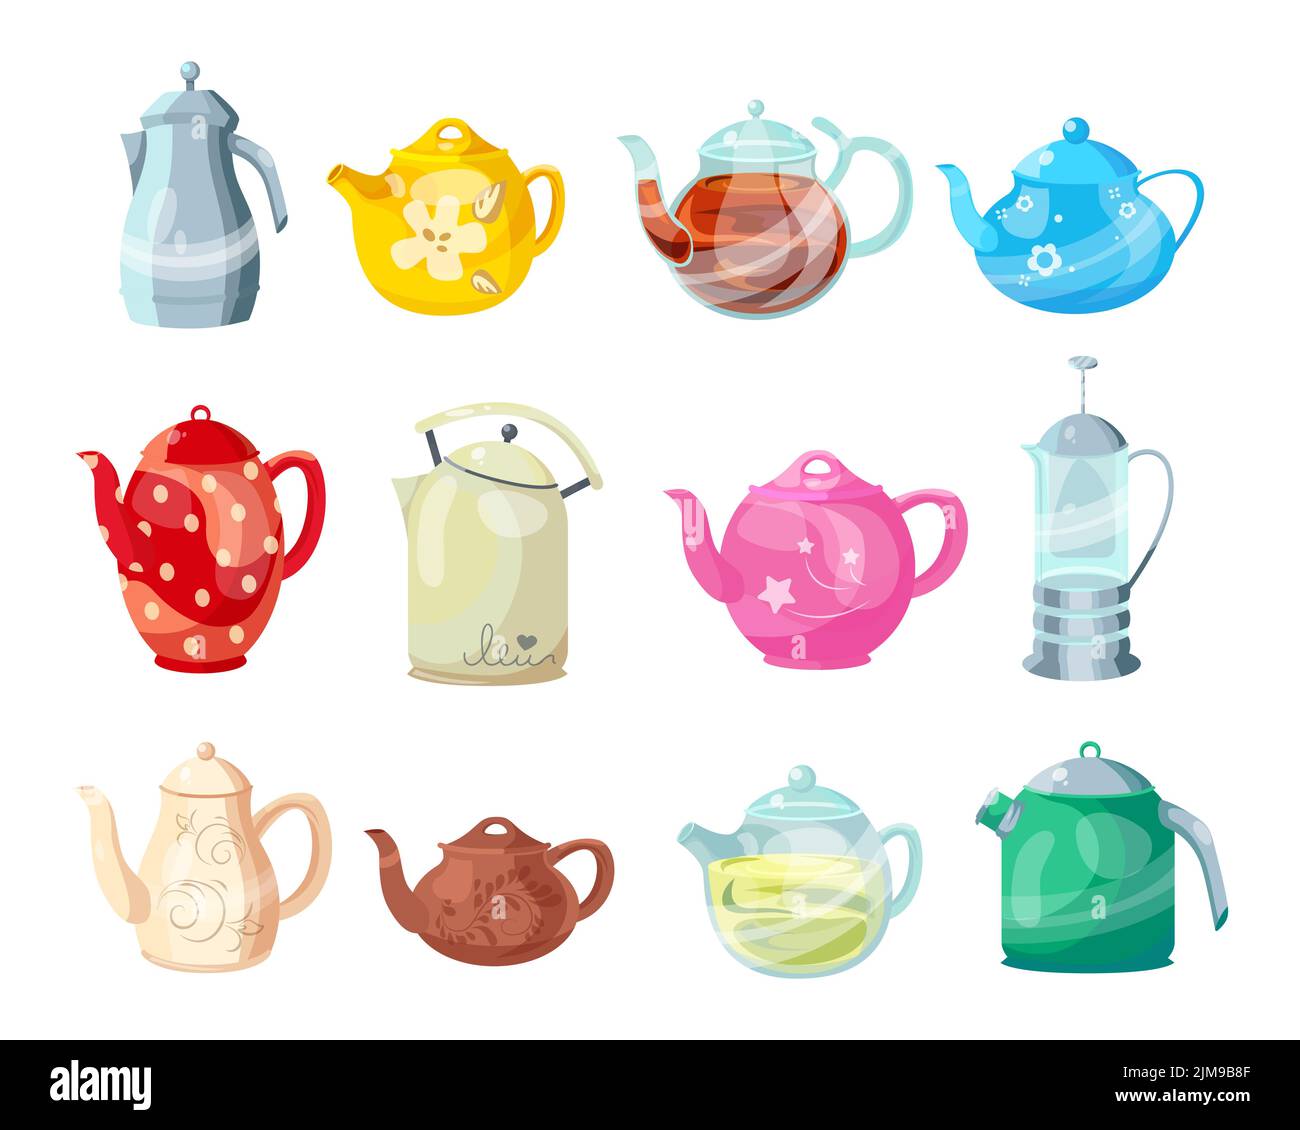 Bunte Teekannen und Wasserkocher Cartoon Illustration Set. Keramik- und Glas-Teekocher zum Kochen von Wasser, Geschirr für Teezeremonie zu Hause. Haushalt, Stock Vektor